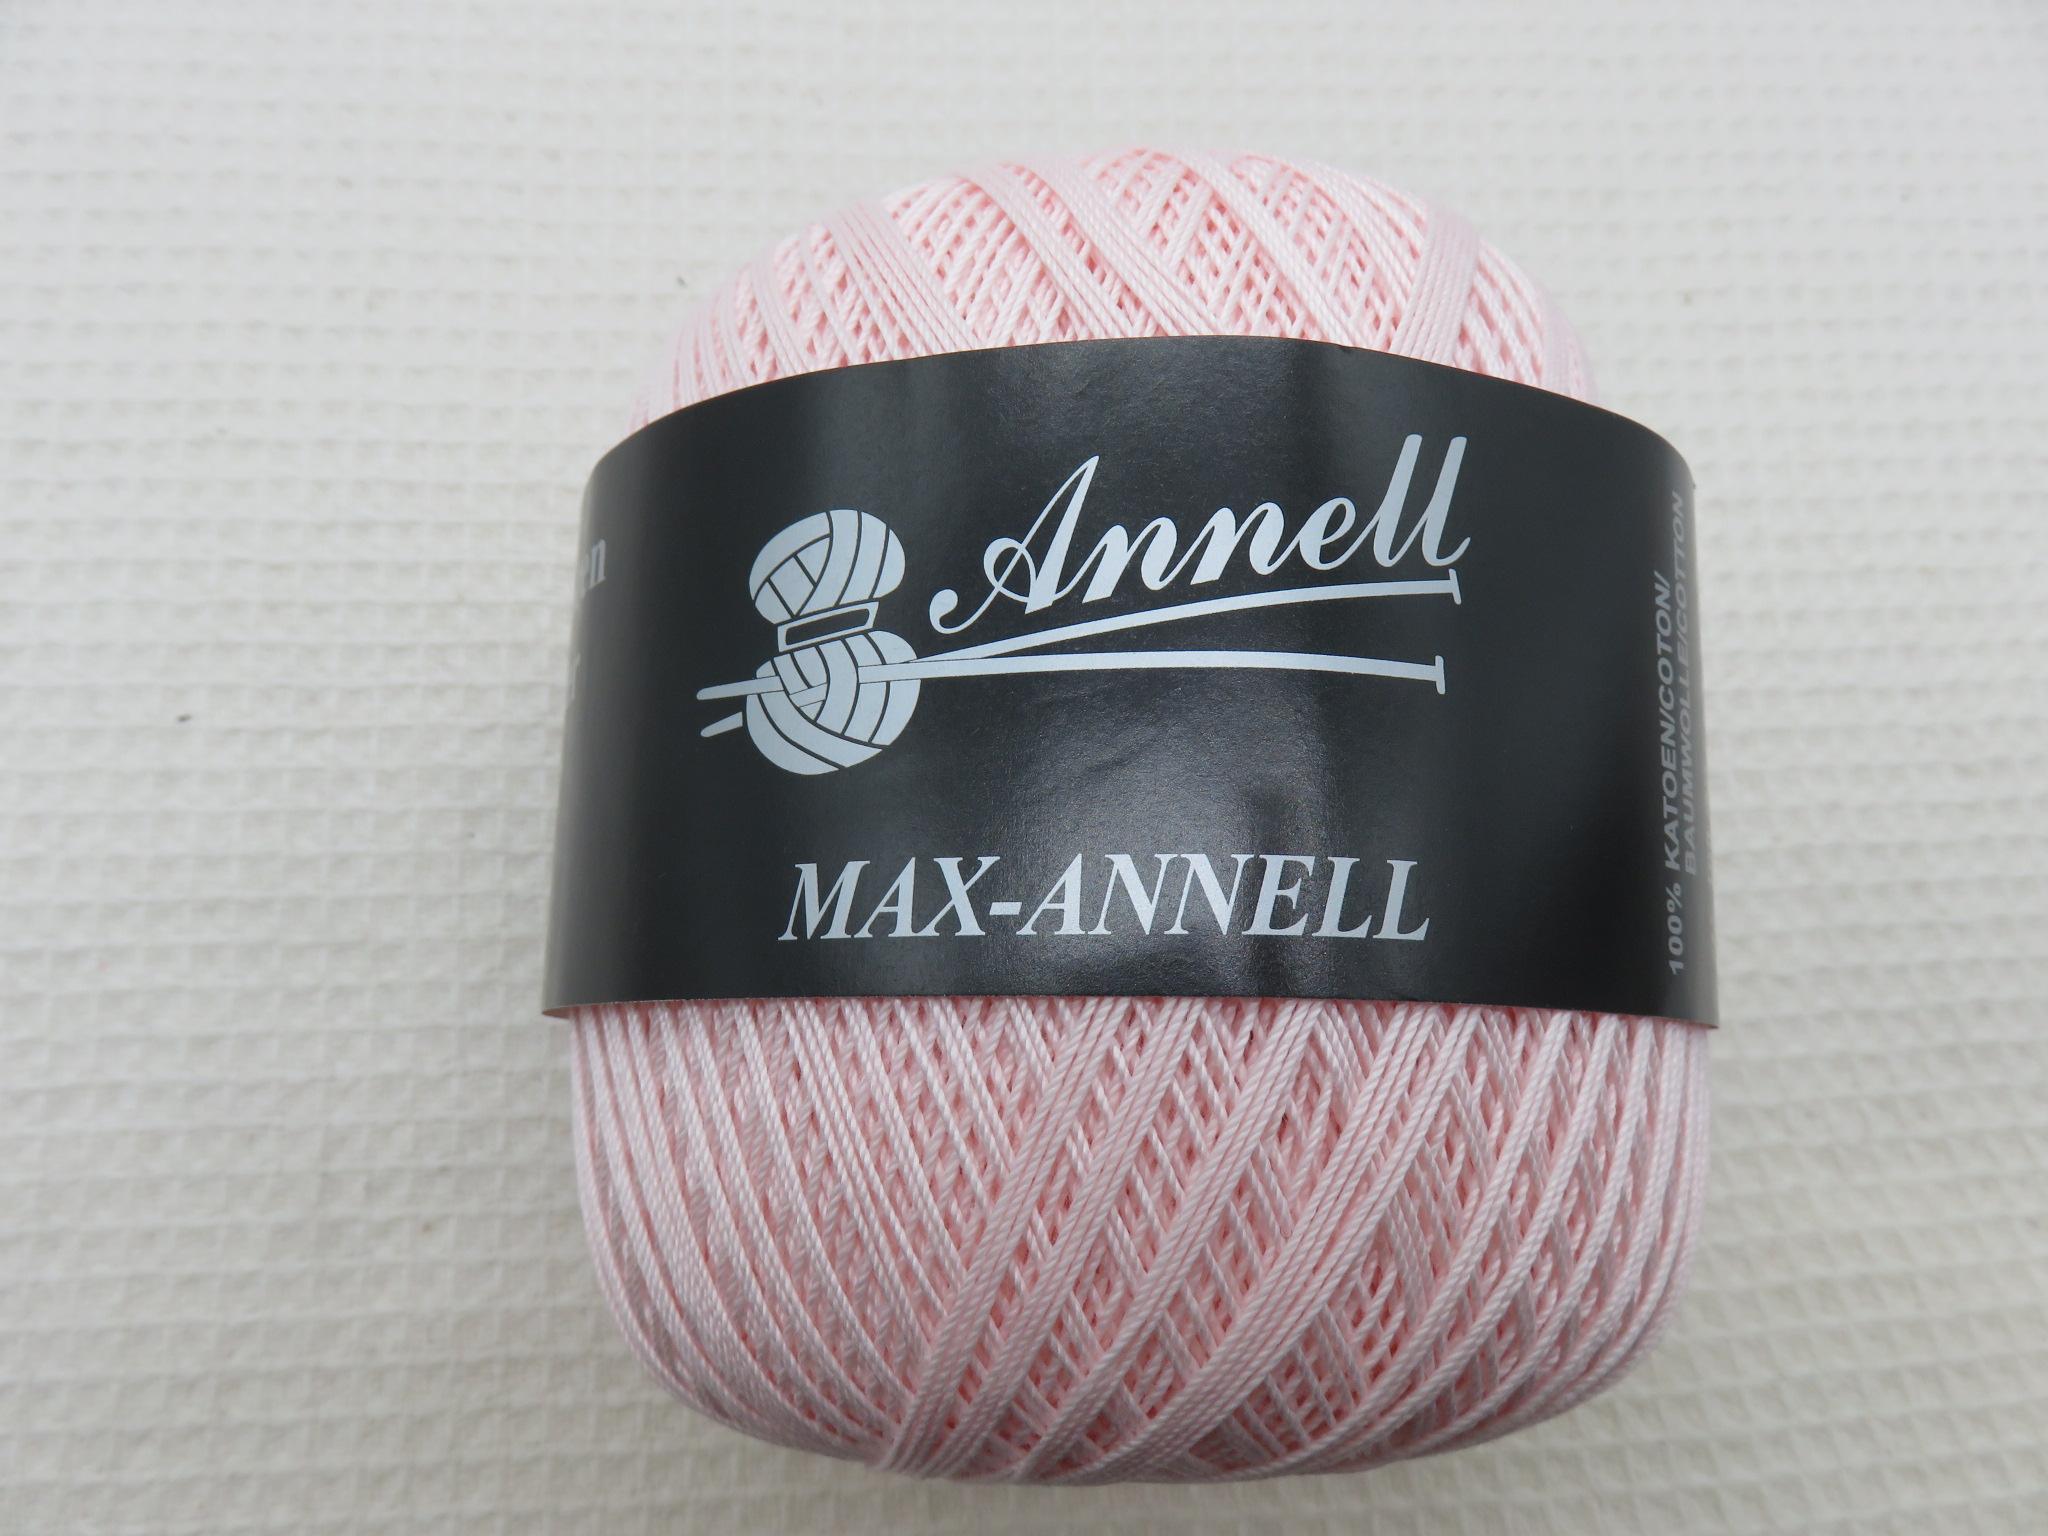 Coton rose Annell pelote Max-Annell Fil 100% coton